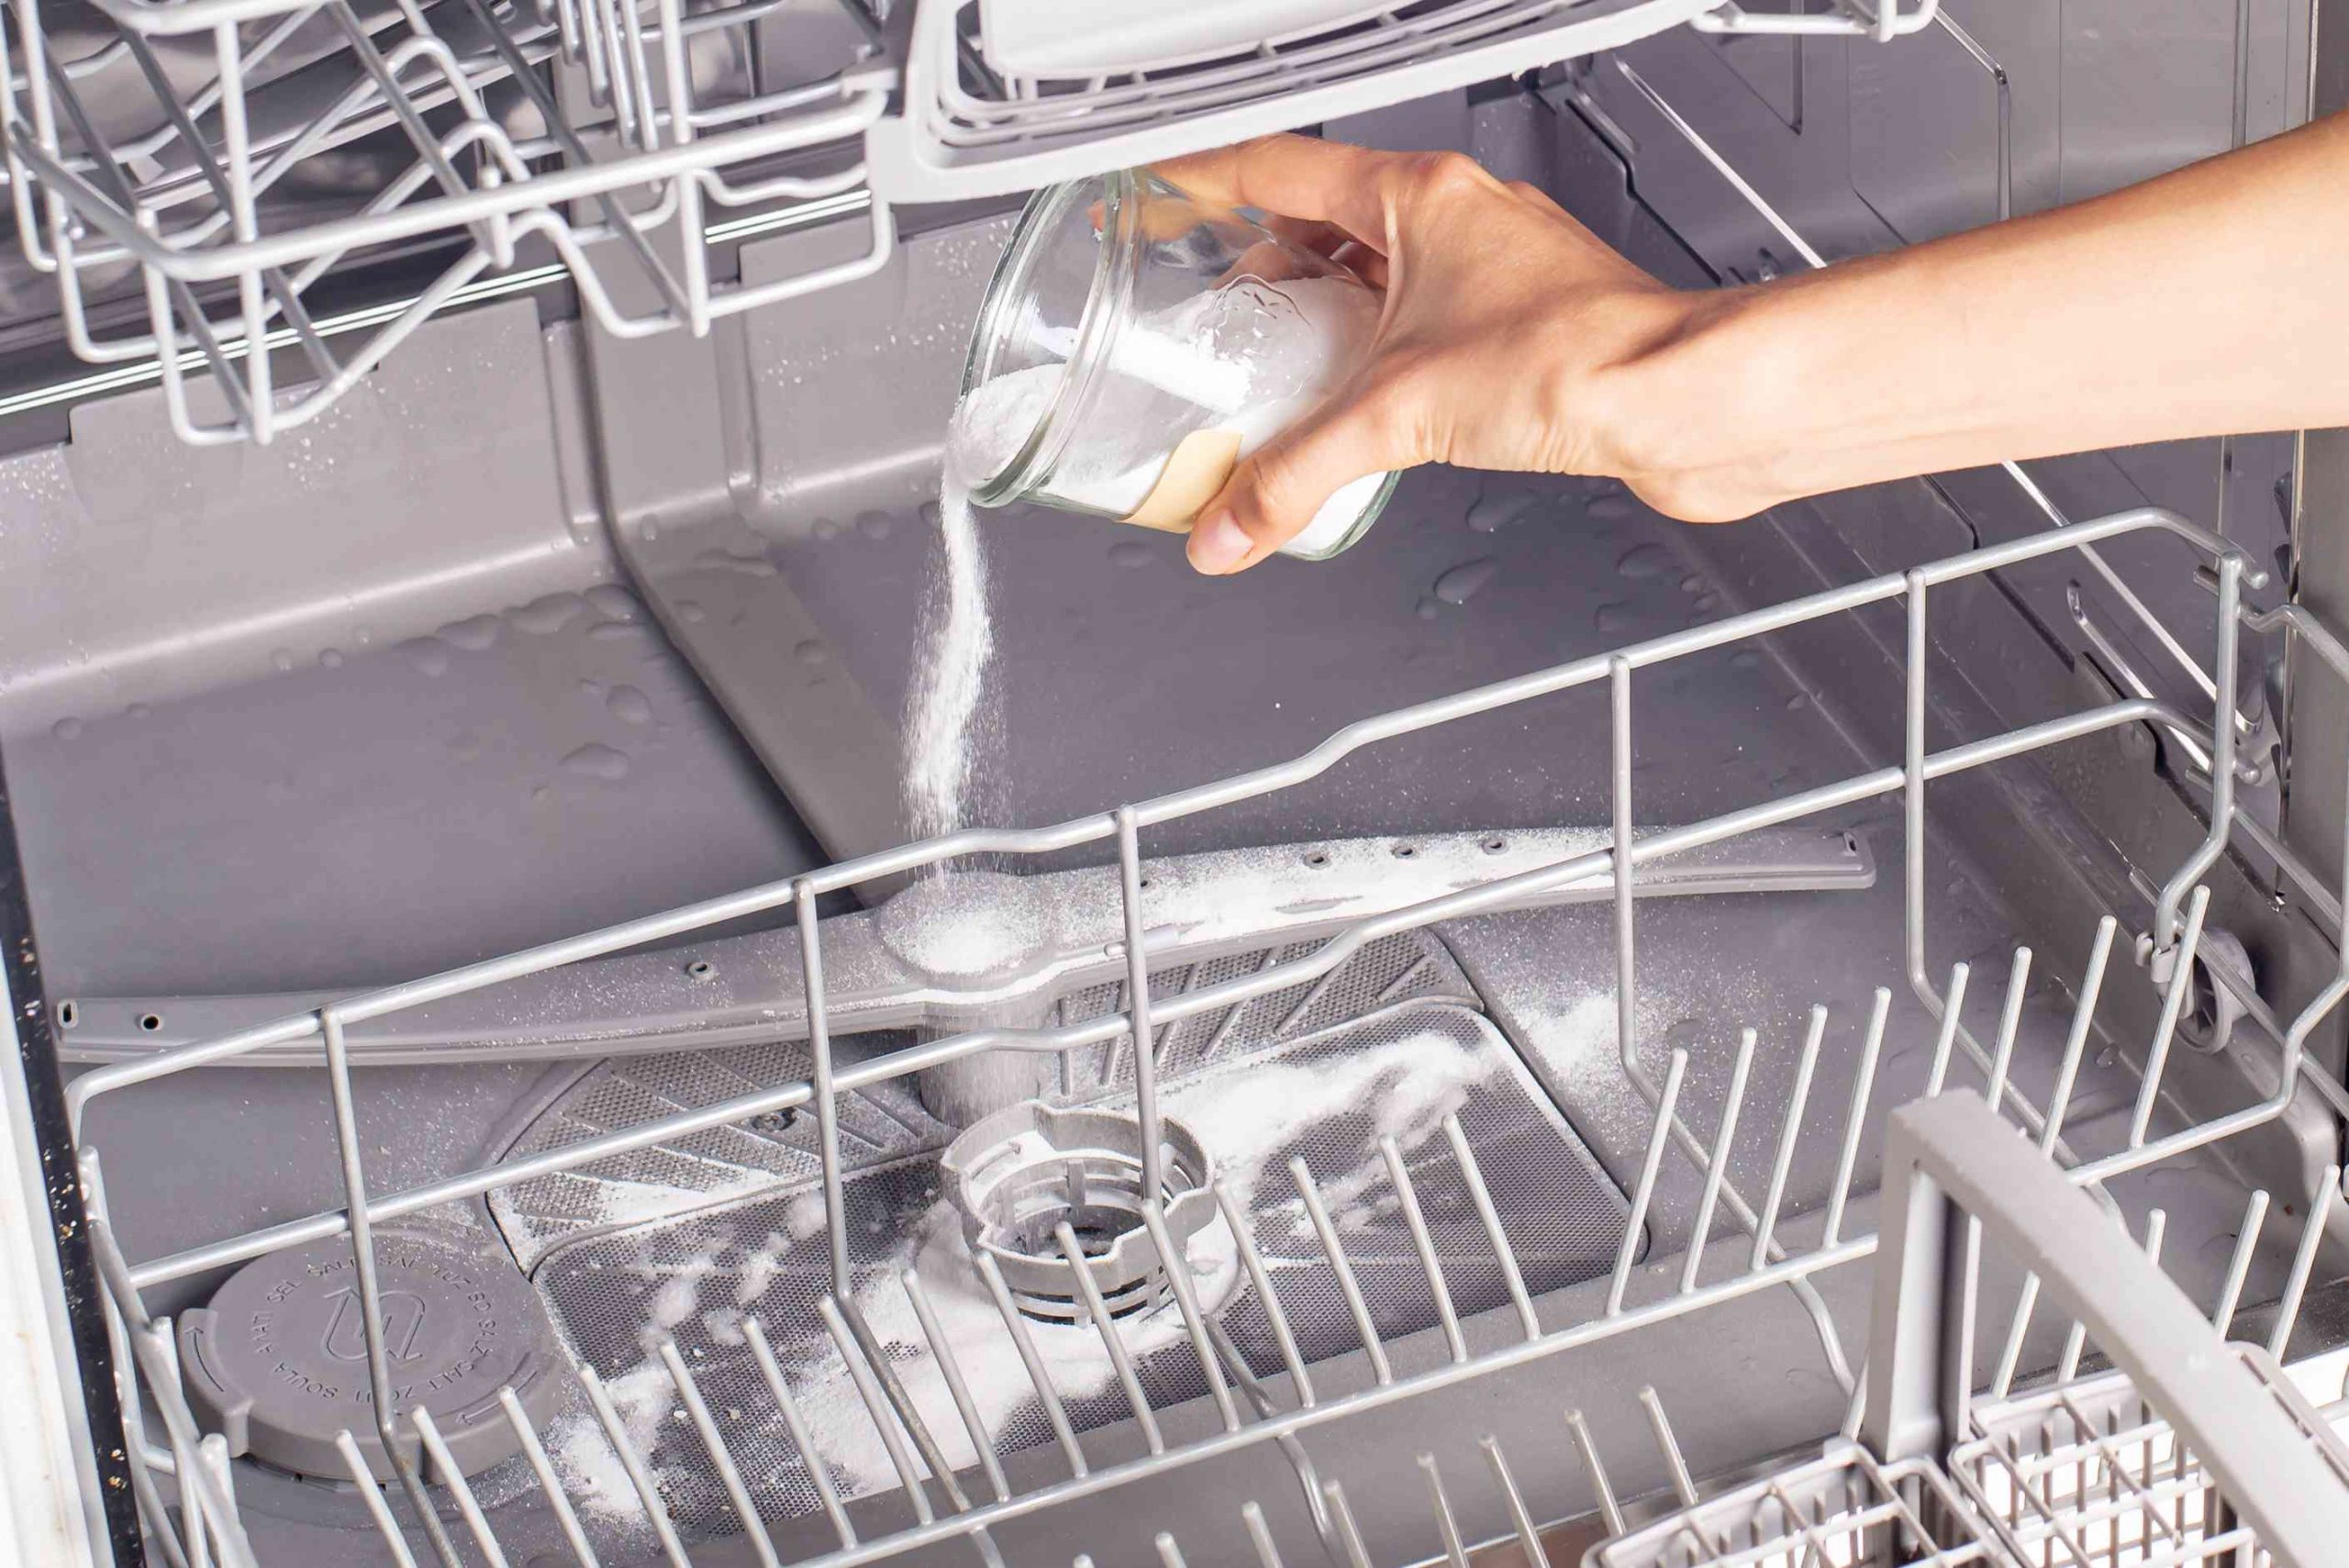 Dishwasher Rinse With Baking Soda